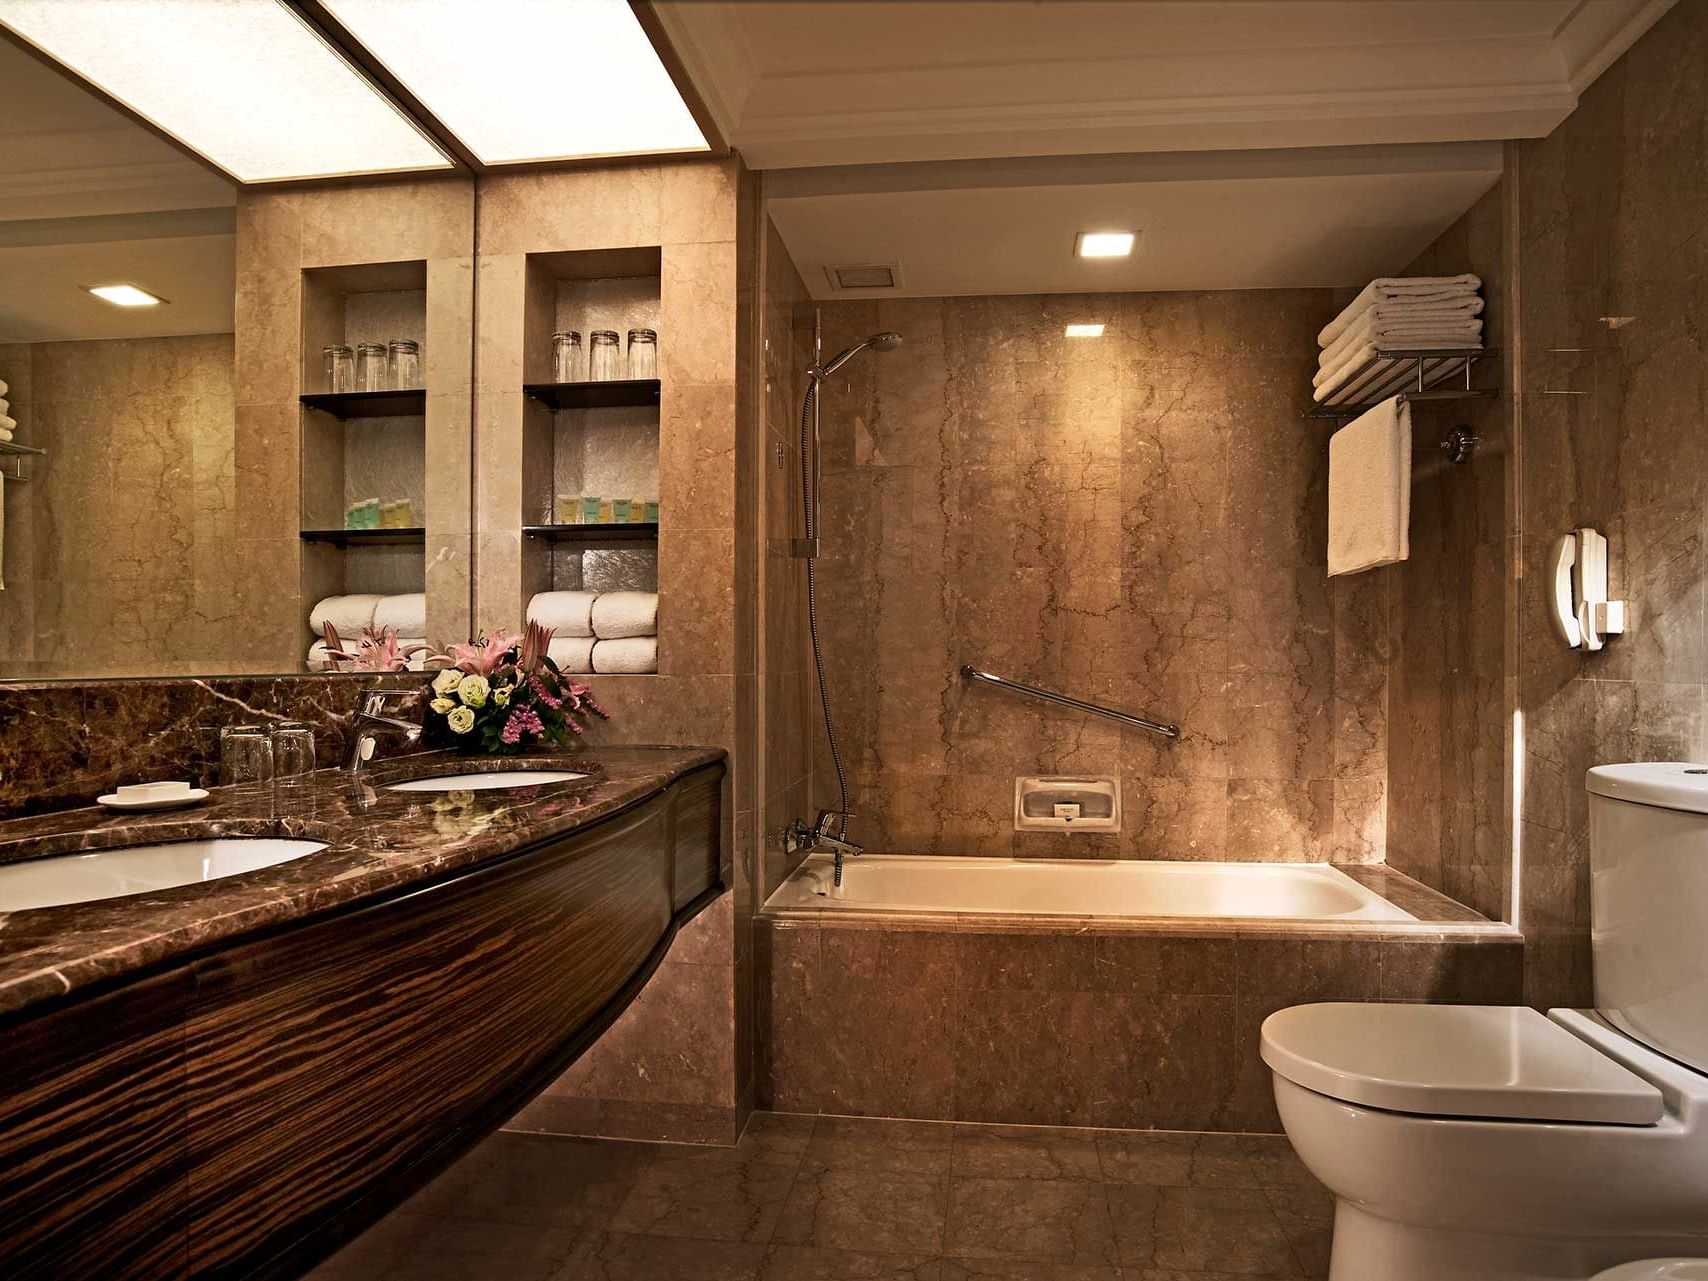 Bathtub & vanity in Premier Room at York Hotel Singapore